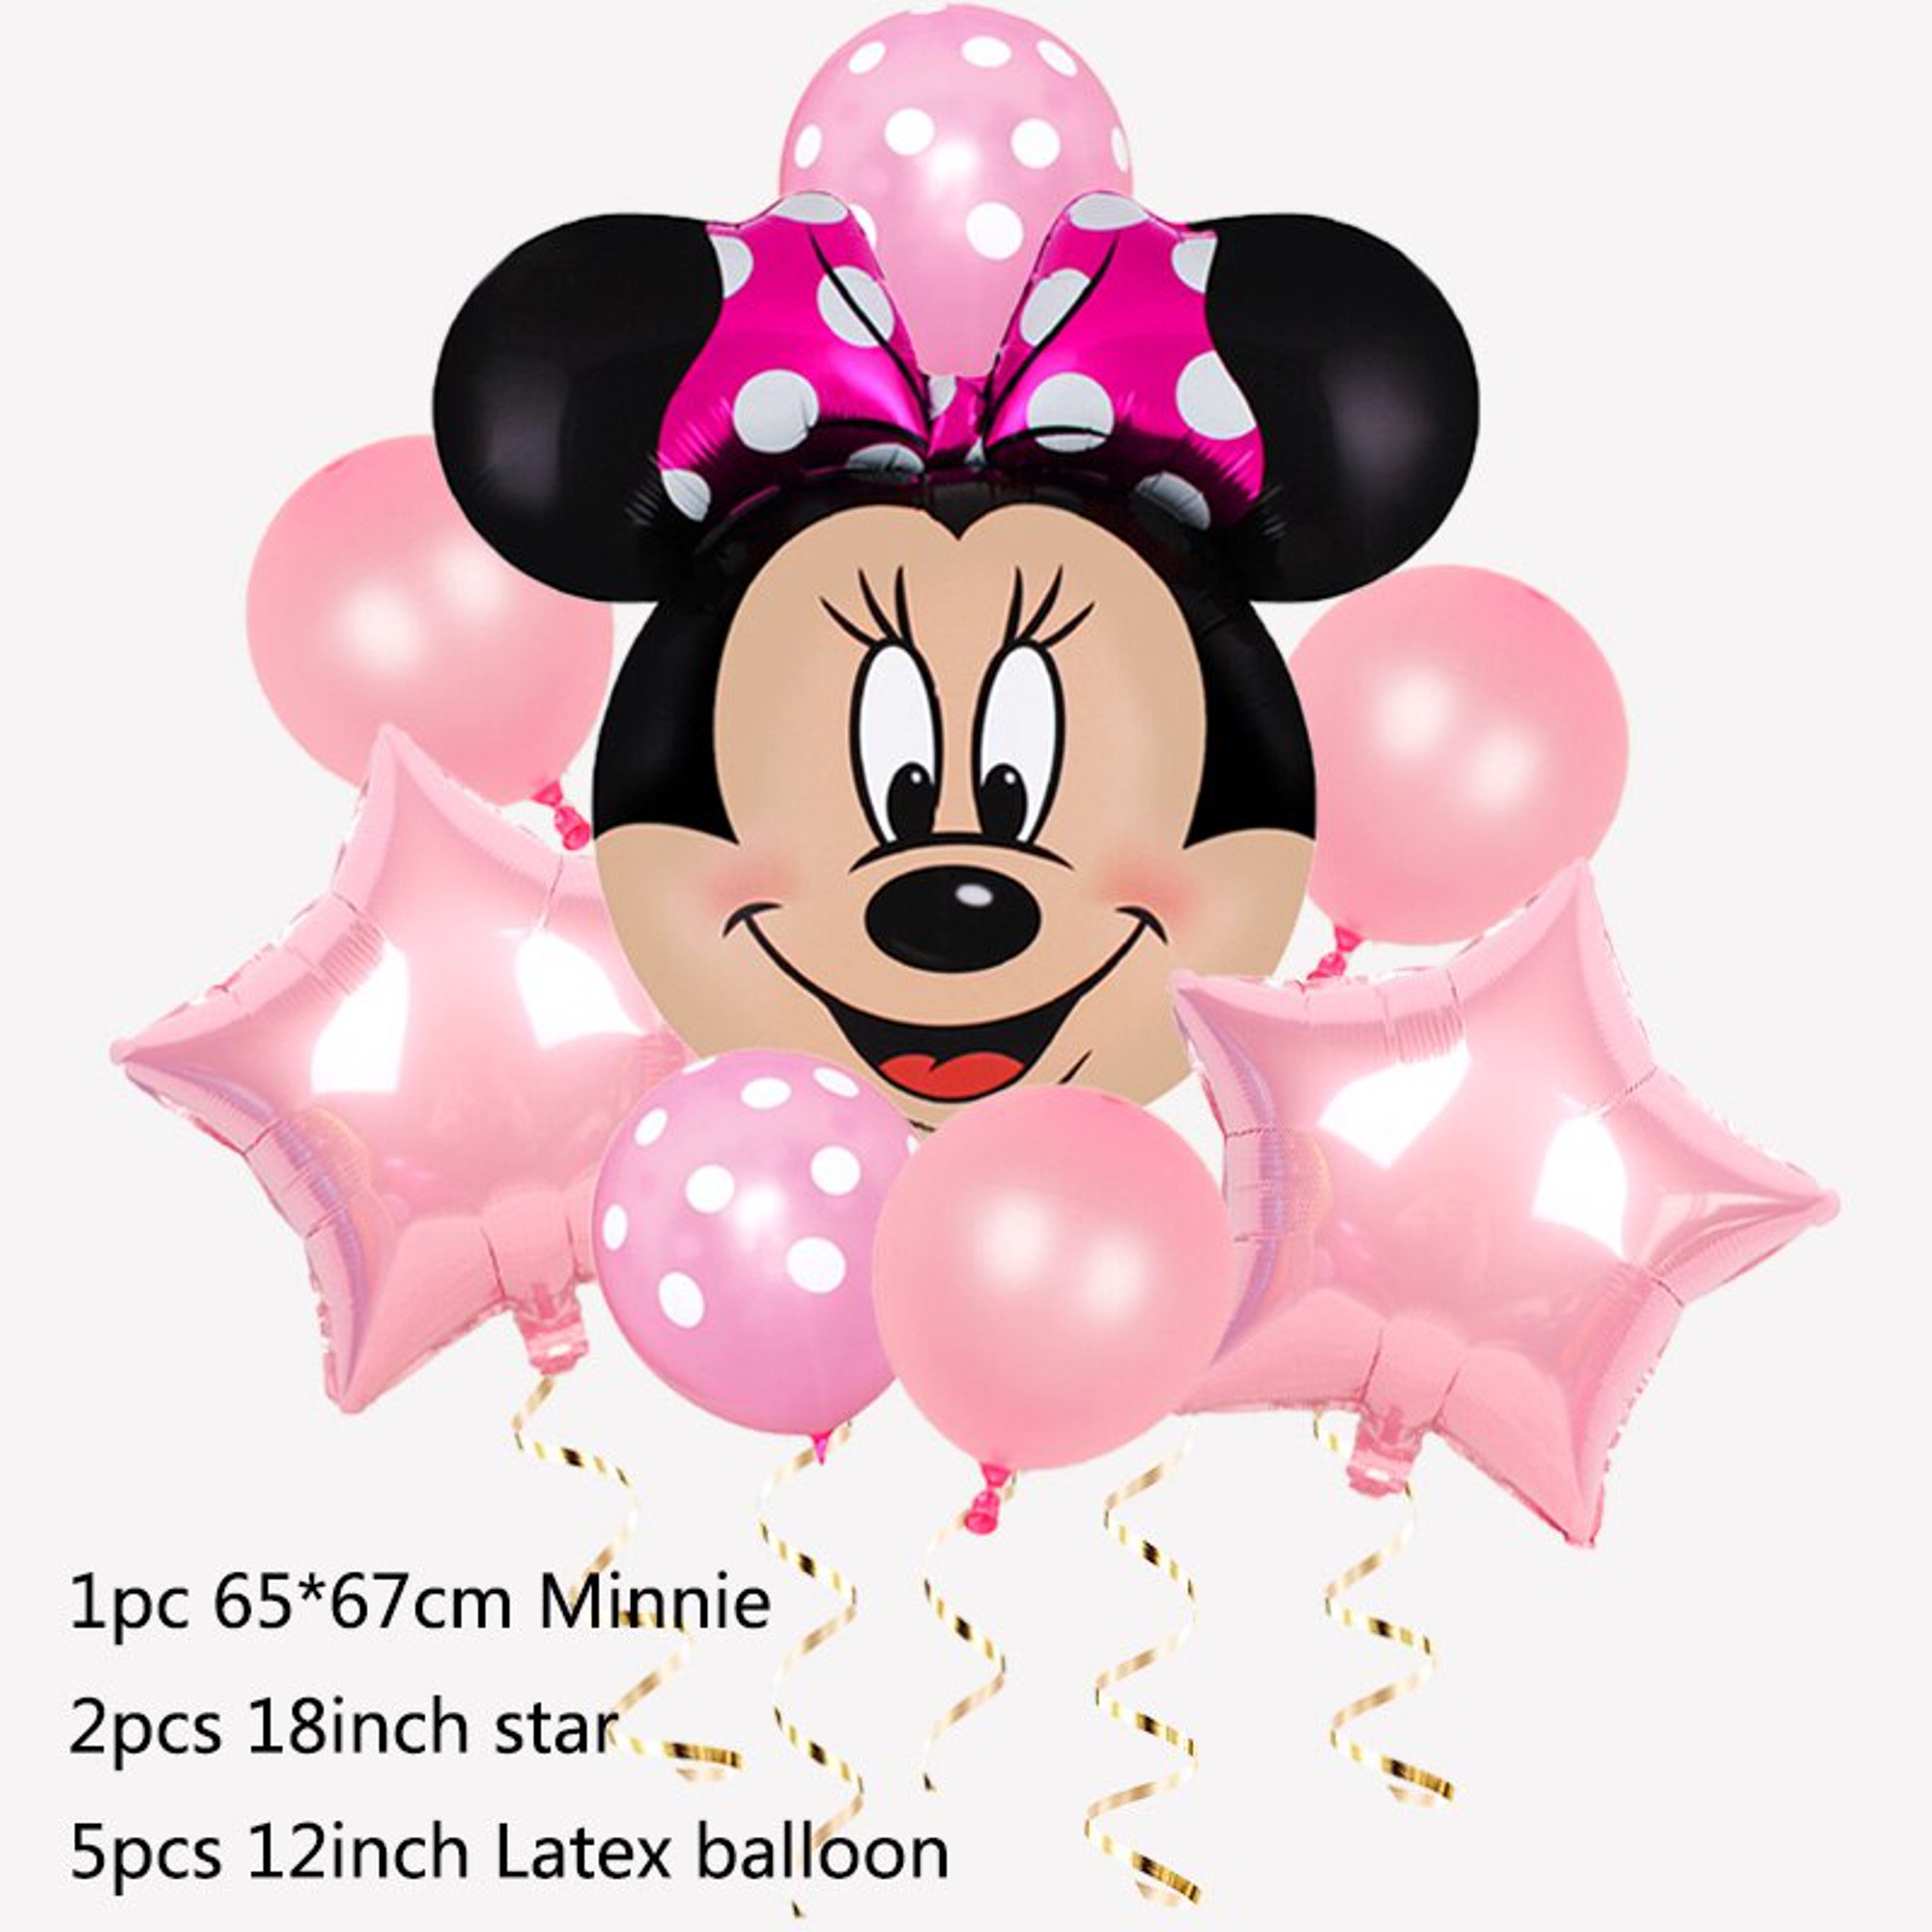 Globos Minnie - Día del Niñ@ (personalizable)